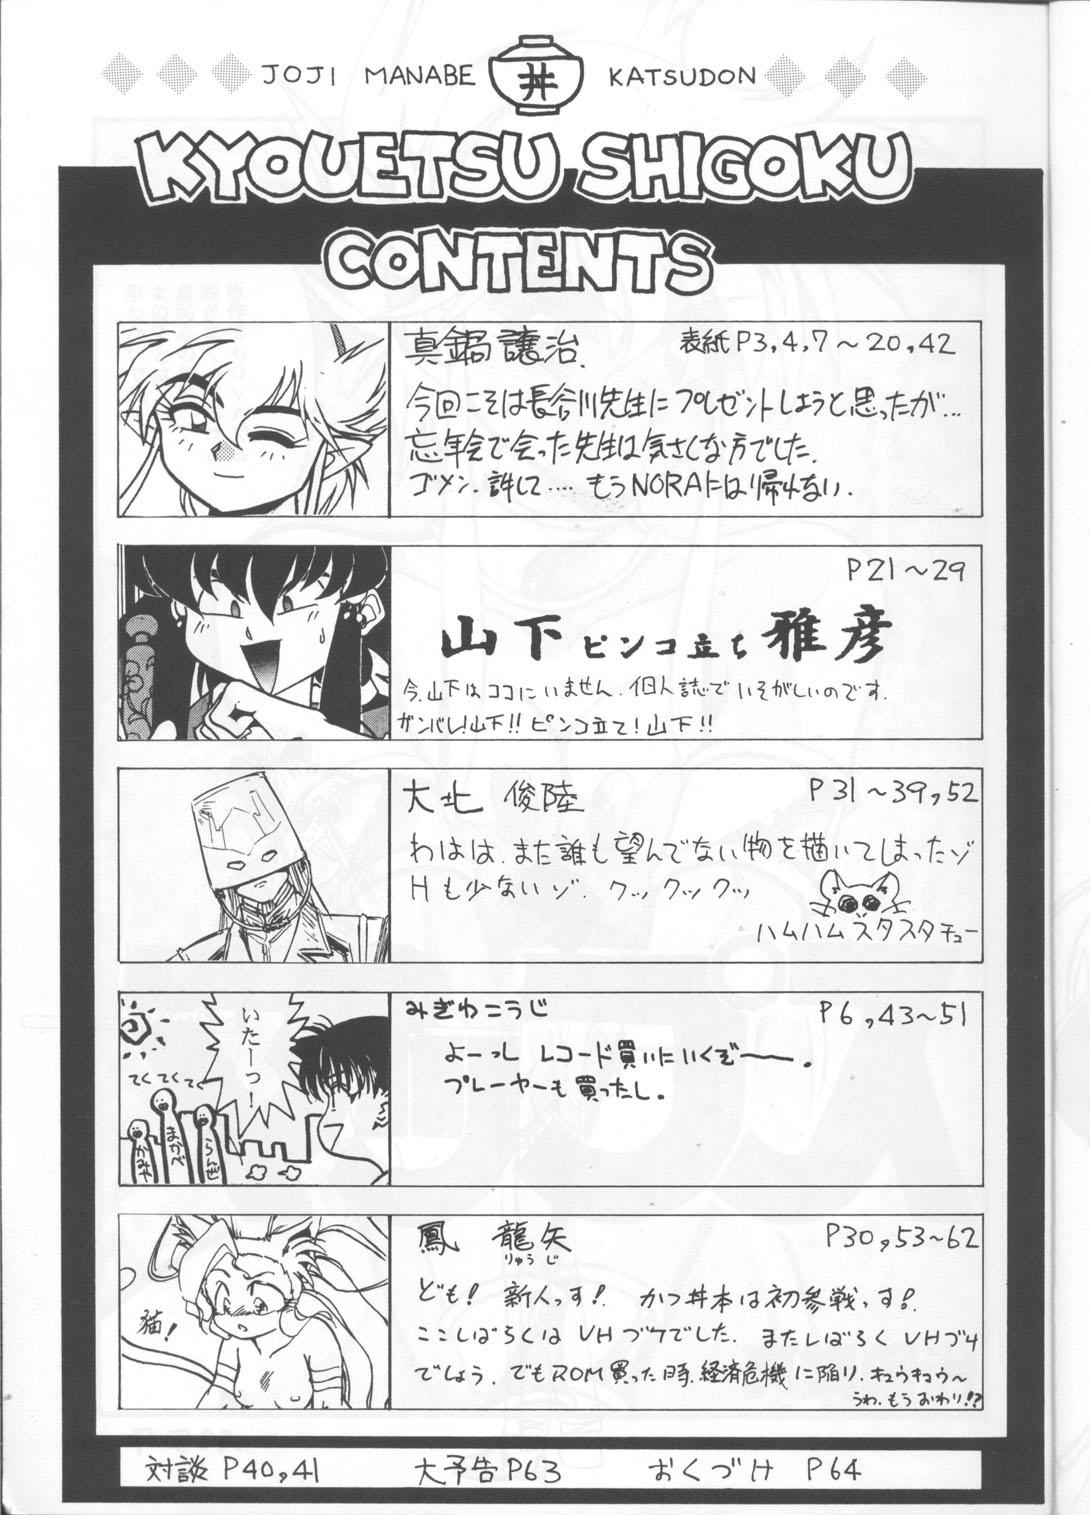 Mulata Kyouetsu Shigoku - Darkstalkers Tenchi muyo Gundam wing Dirty pair flash Armitage iii Tokimeki tonight Maps Sperm - Page 4